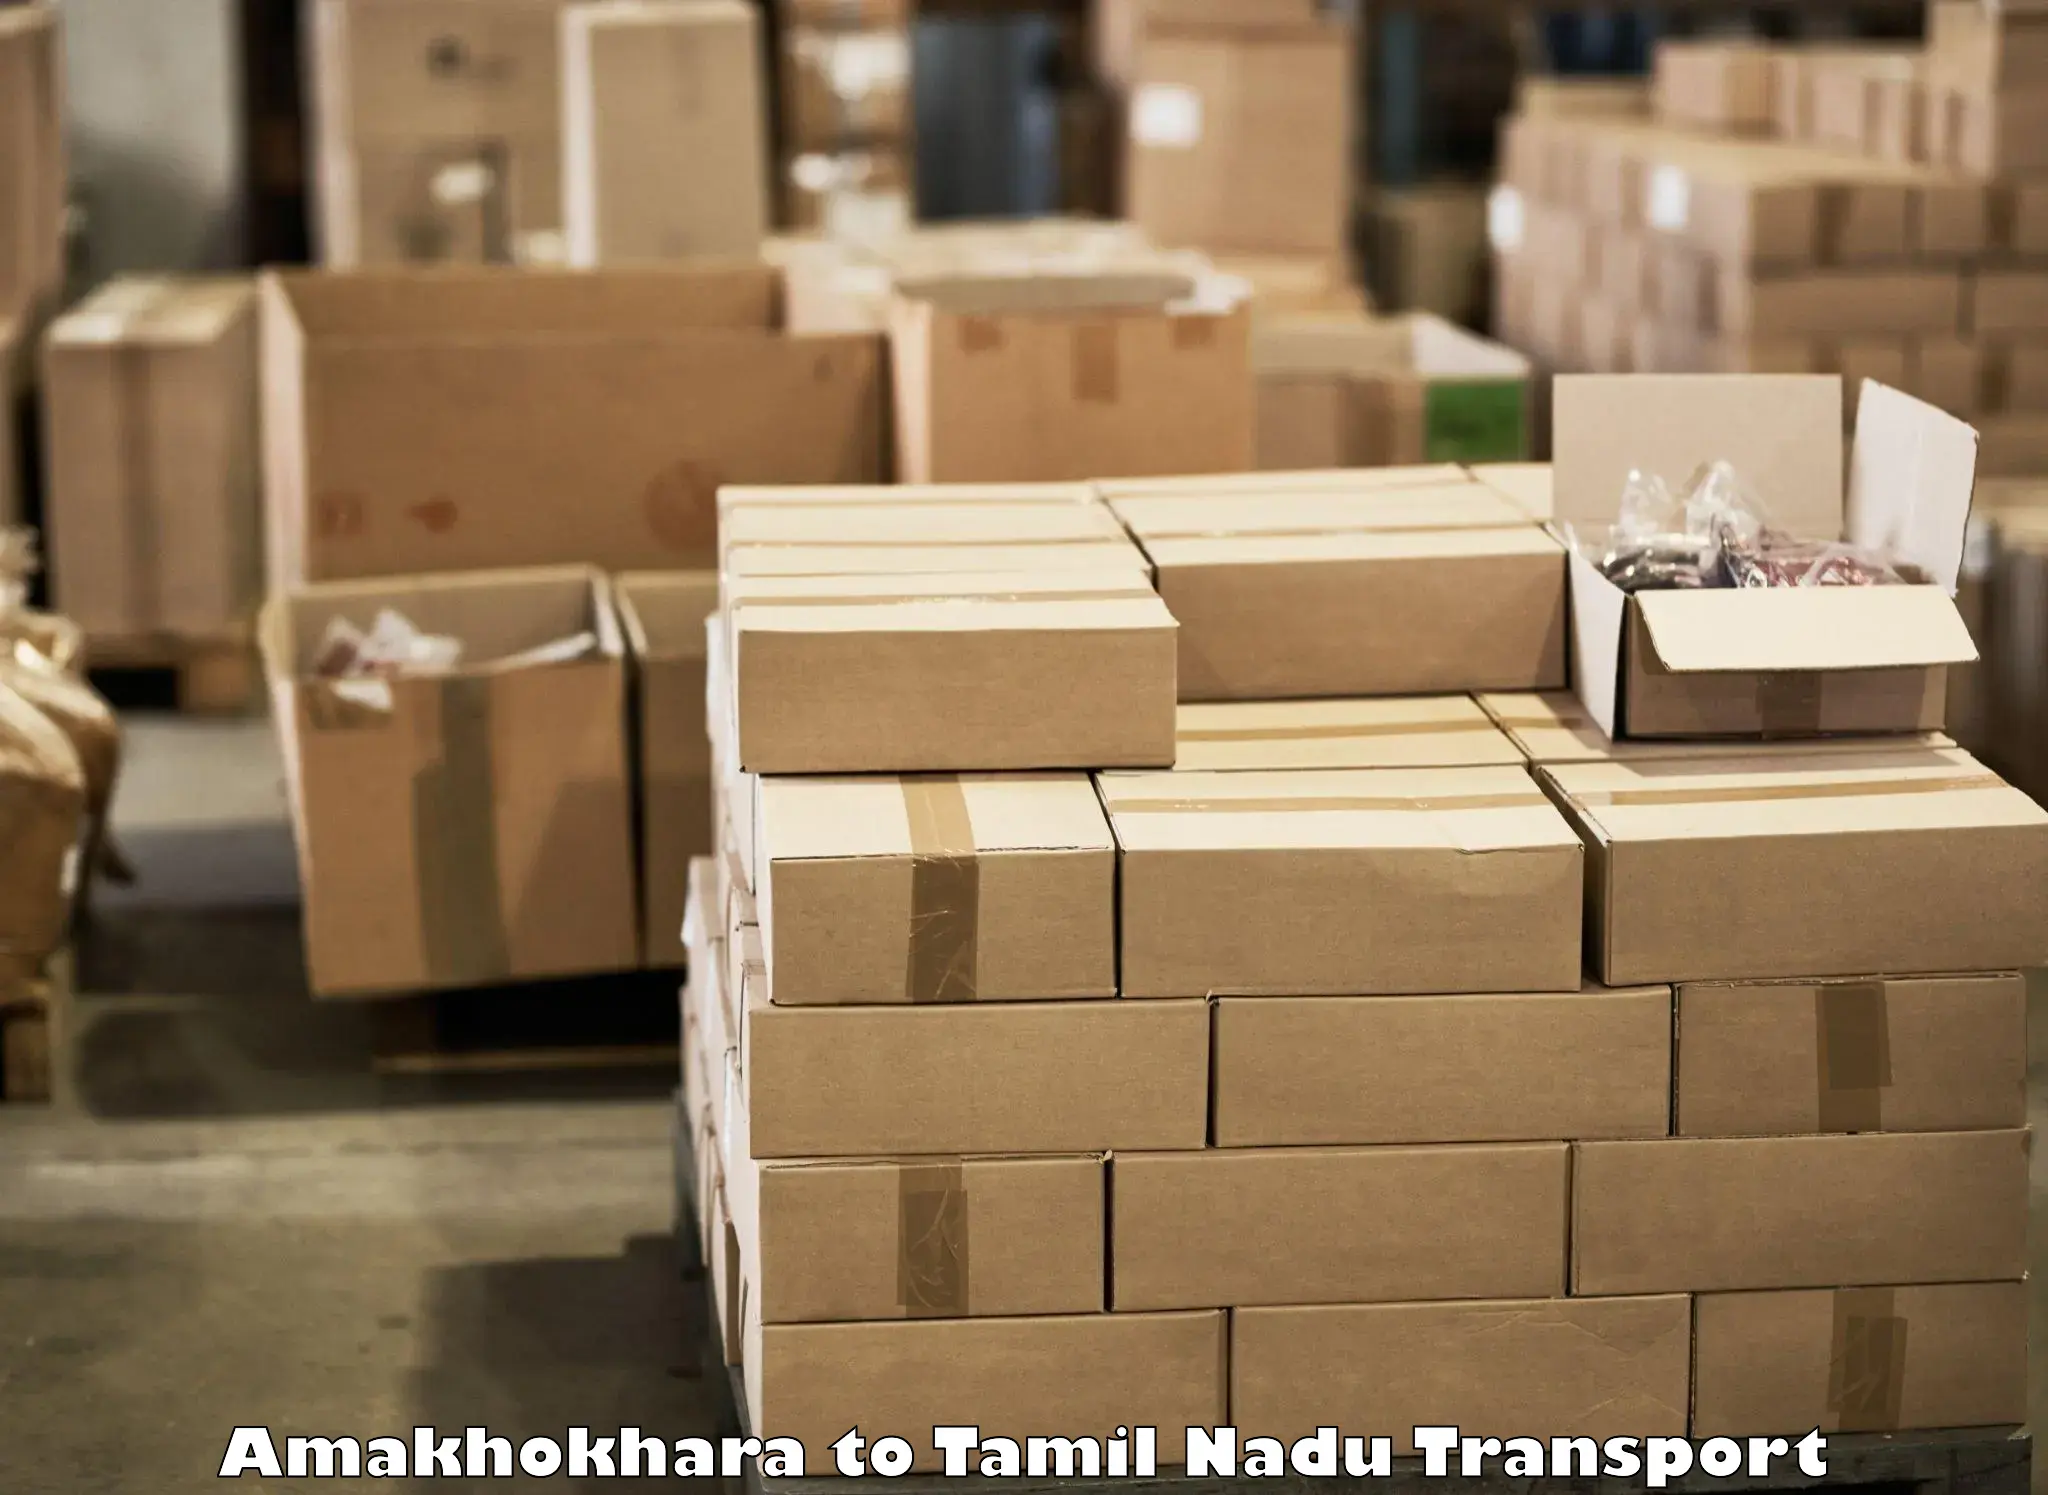 Container transport service Amakhokhara to Marakkanam